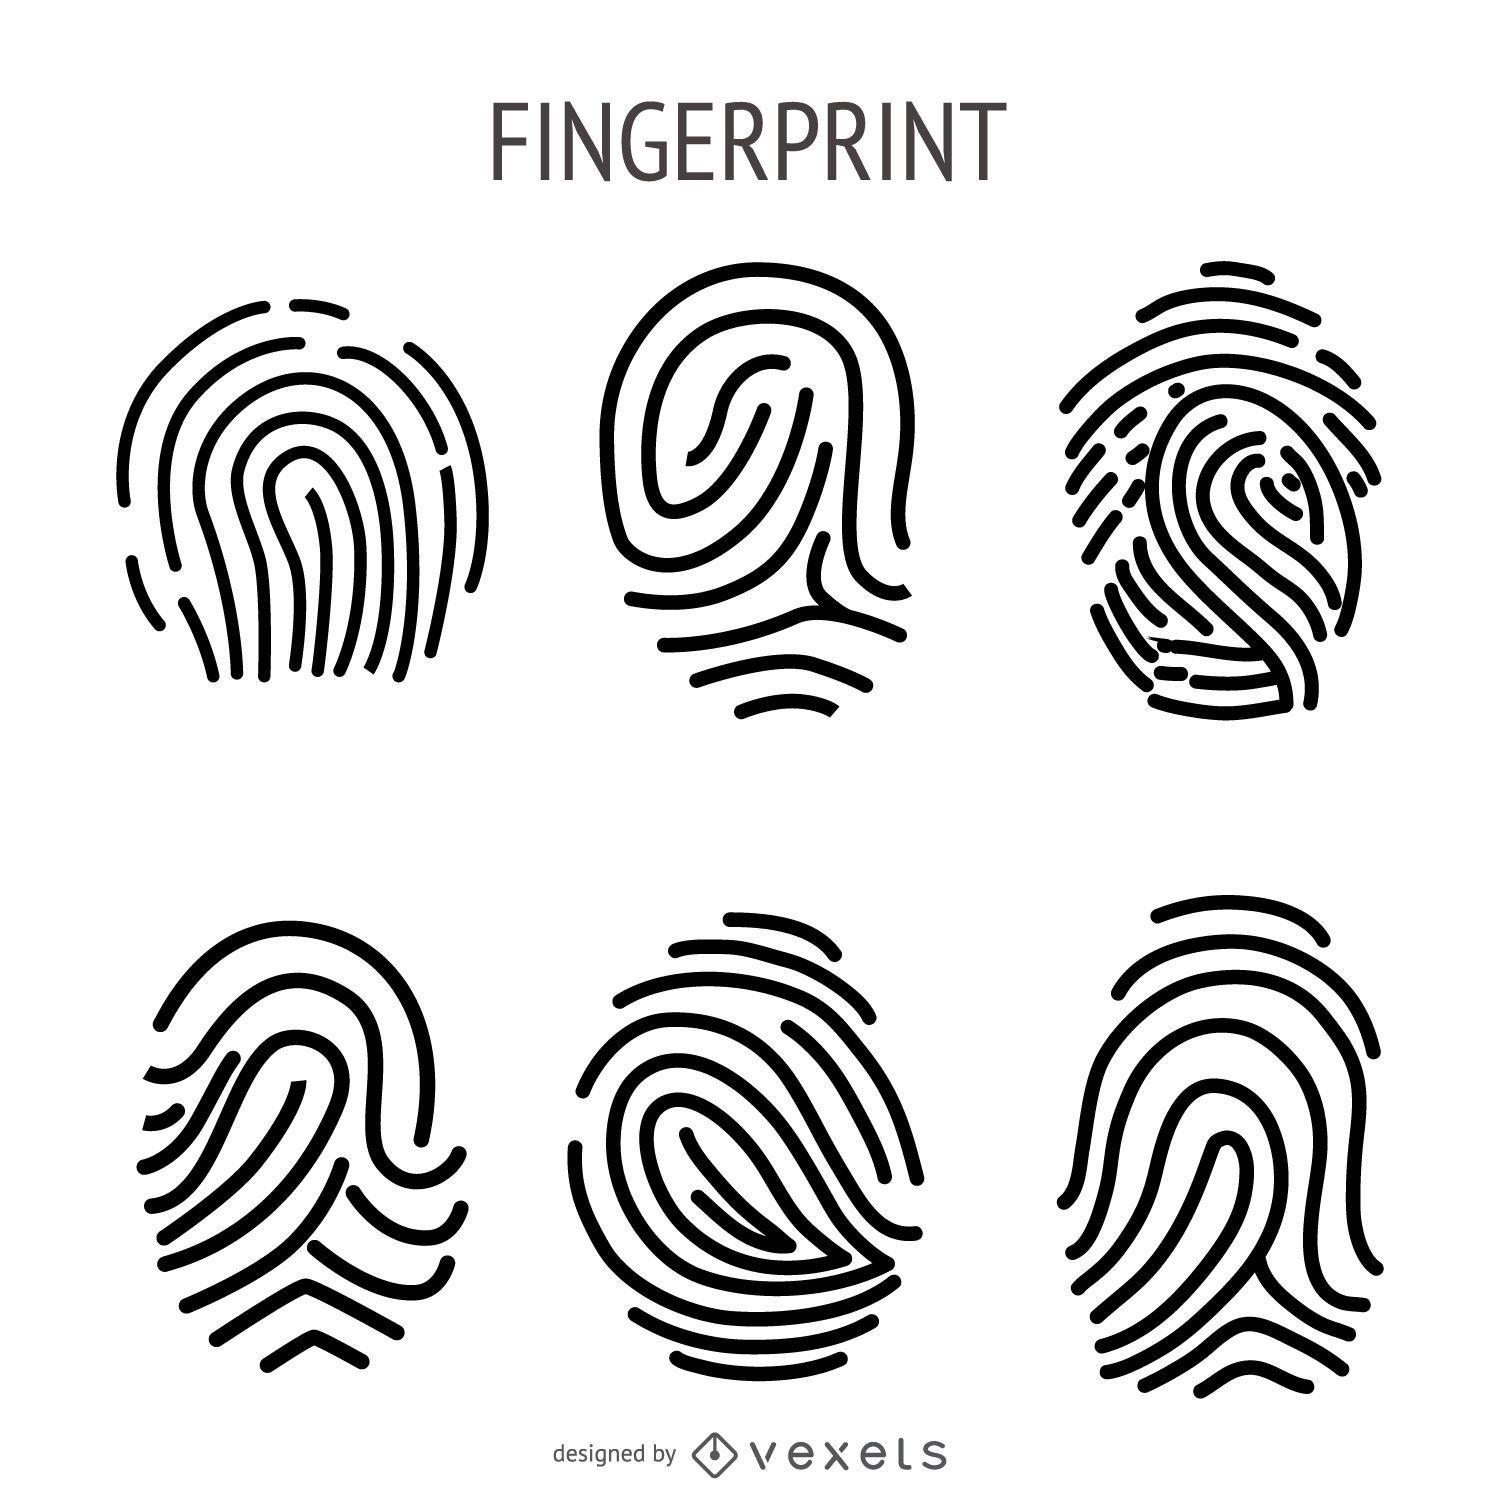 Fingerprint Illustration Set Vector Download